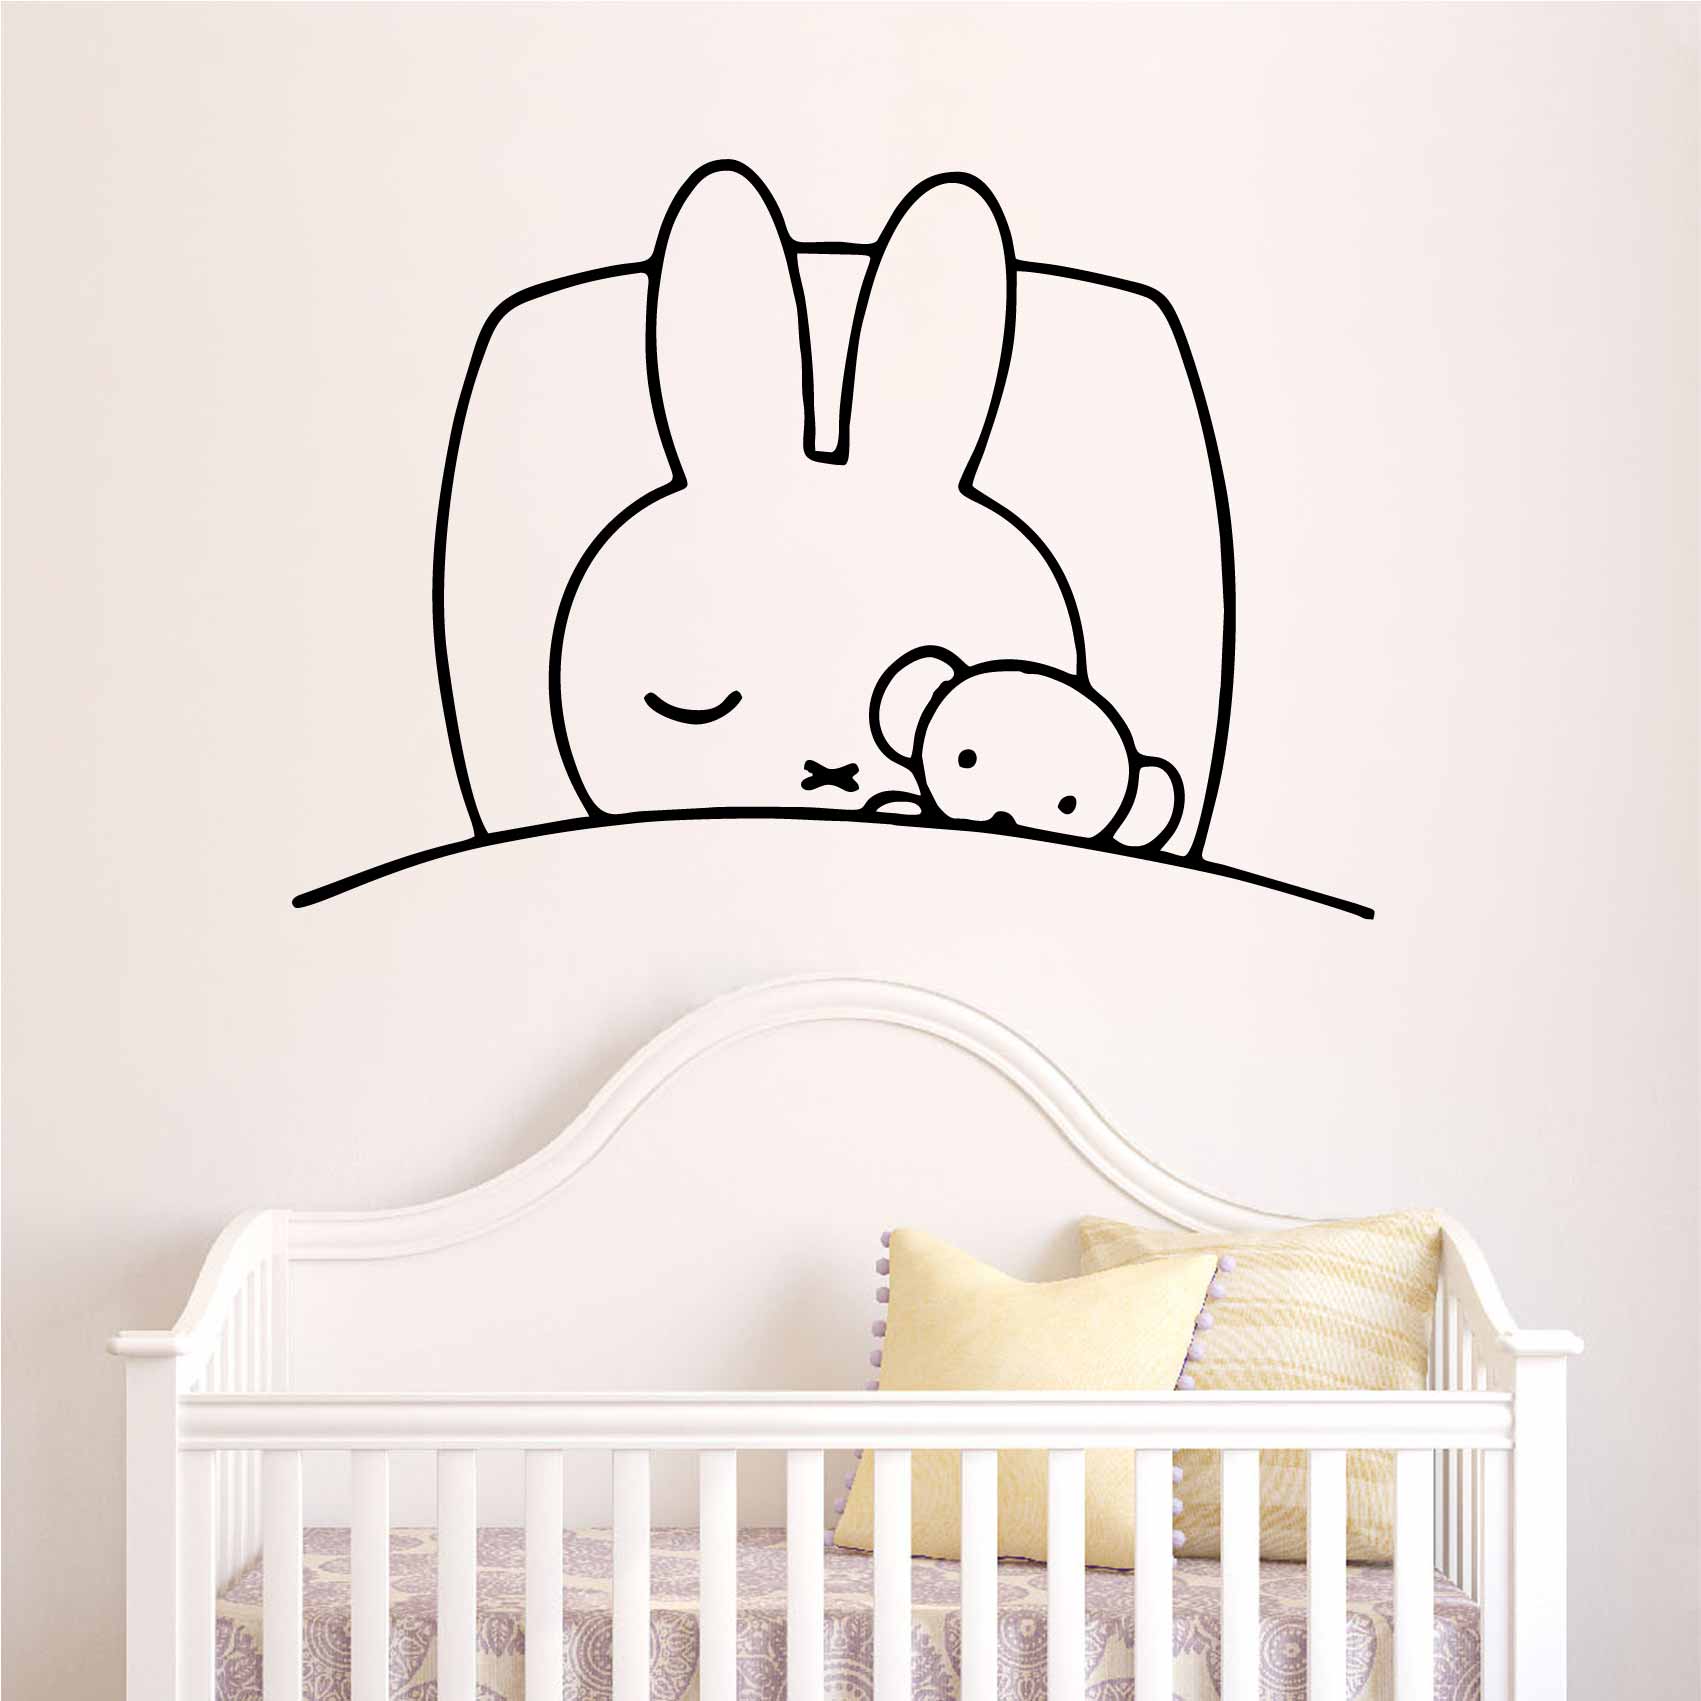 stickers-lapin-endormi-ref44bebe-stickers-muraux-bébé-autocollant-mural-bébé-sticker-chambre-enfant-garcon-fille-decoration-deco